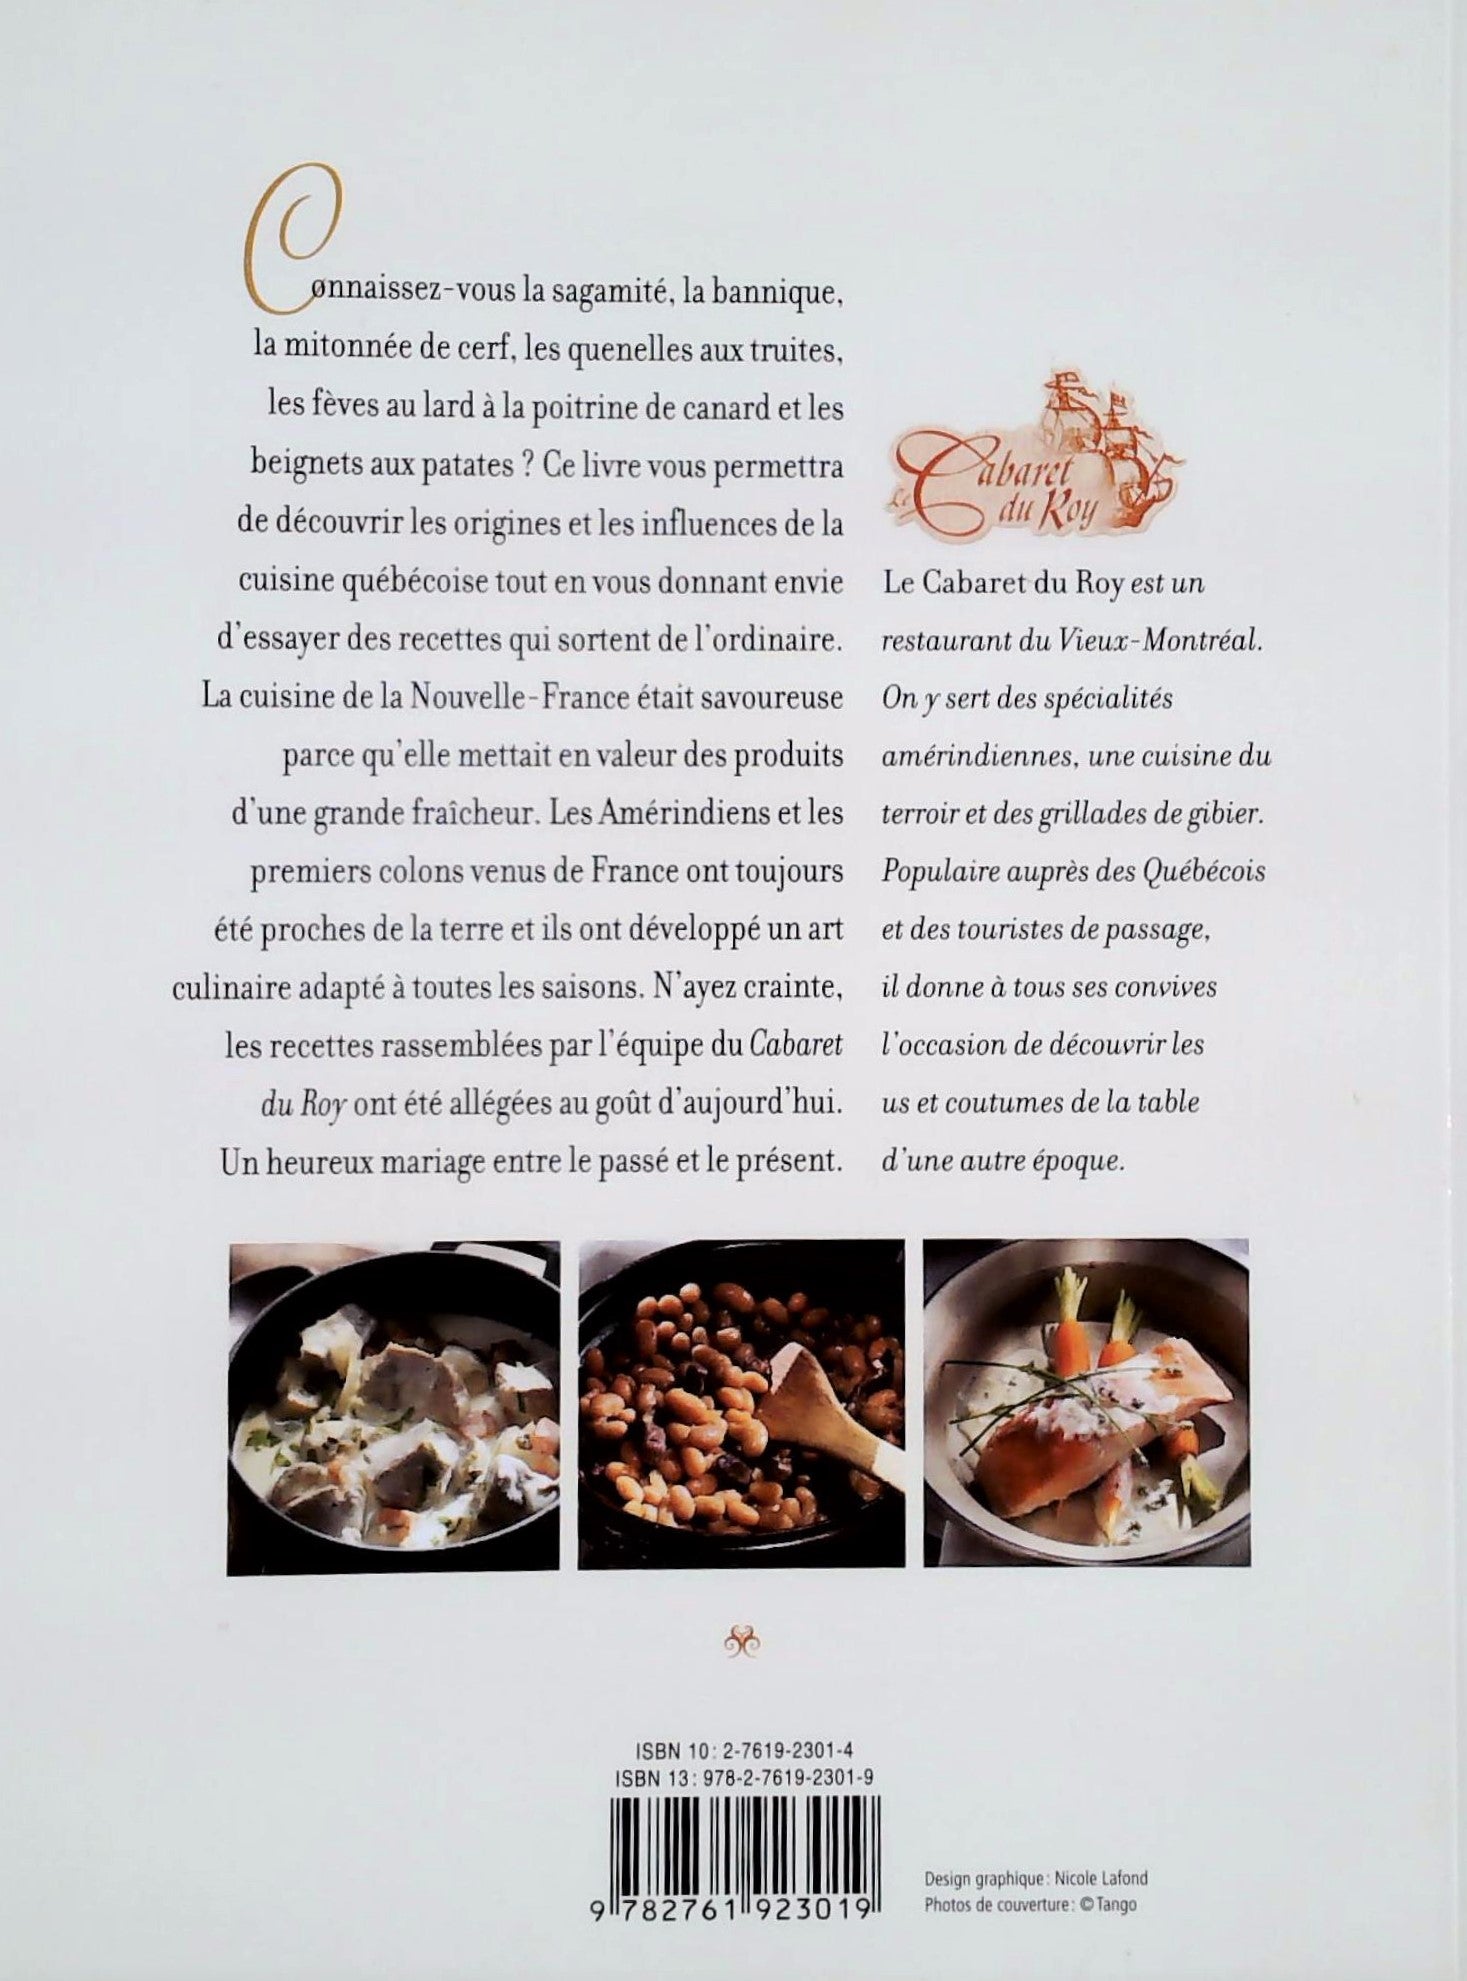 La cuisine de la Nouvelle-France : 50 recettes d'hier adaptée au goût d'aujourd'hui par le maître-coq du Cabaret du Roy